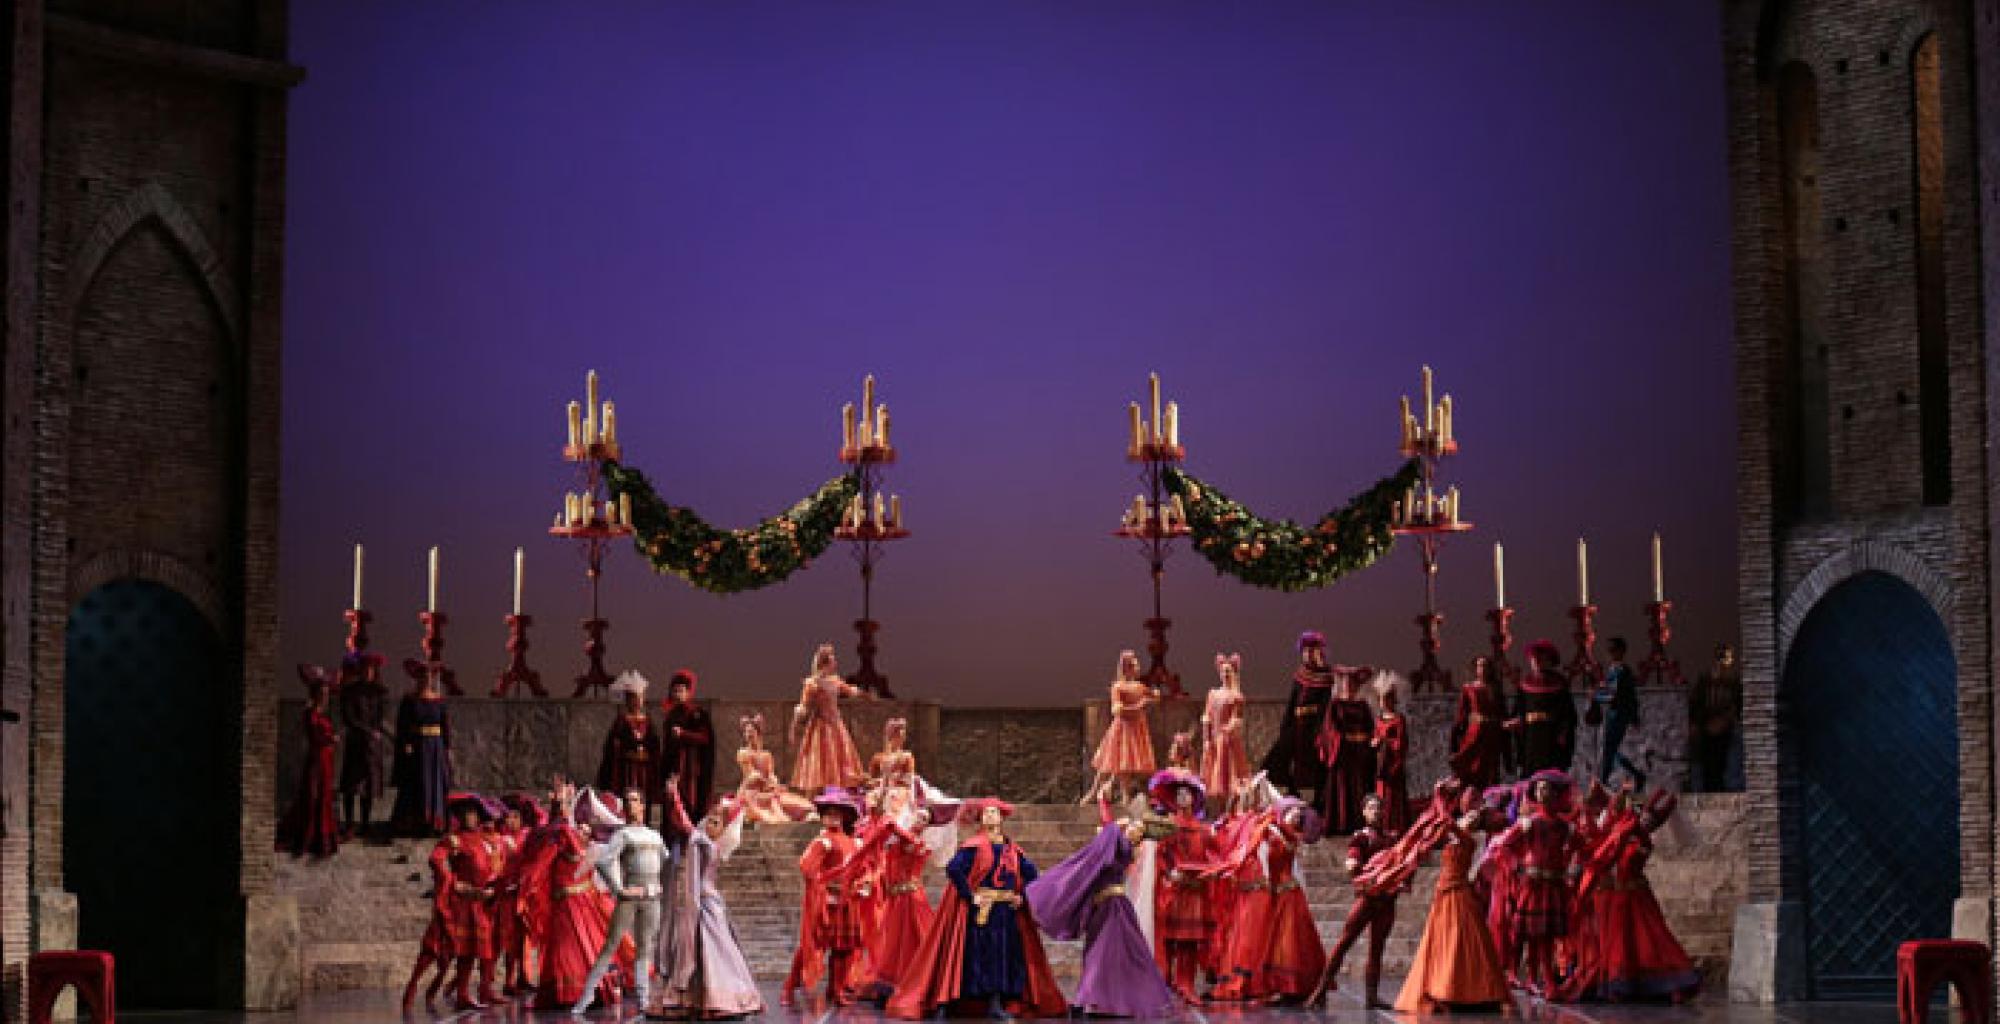 Romeo and Juliet | Palace Opera u0026 Ballet - Cinema Programme